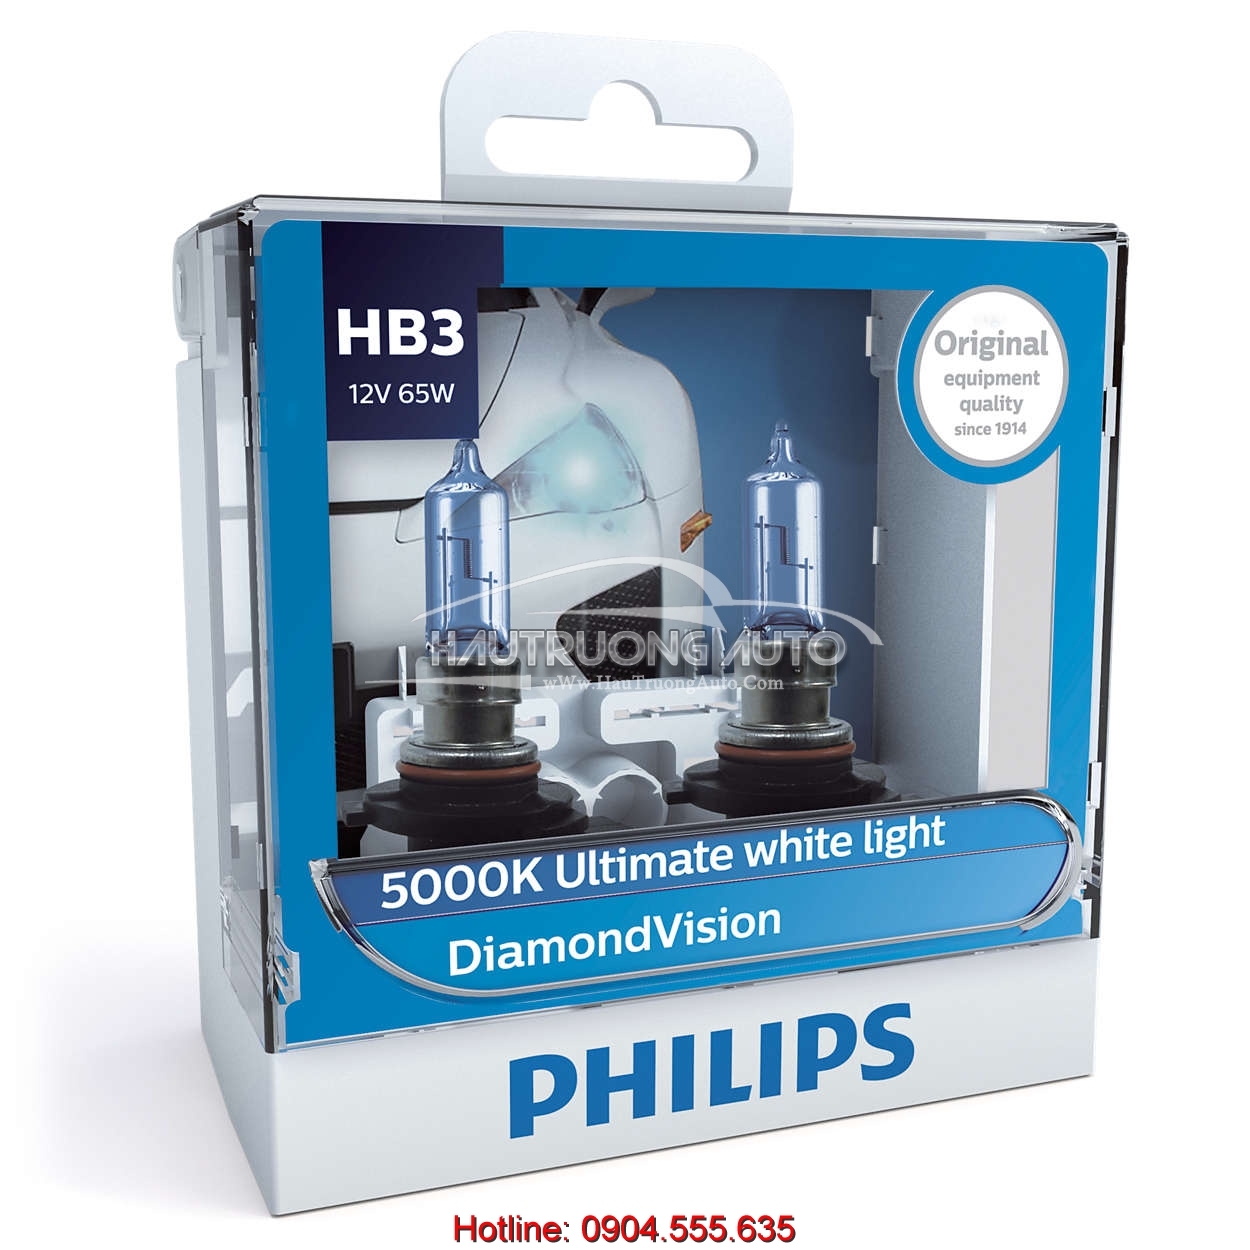 Bóng đèn HB3 Philips DiamonVision 5000K